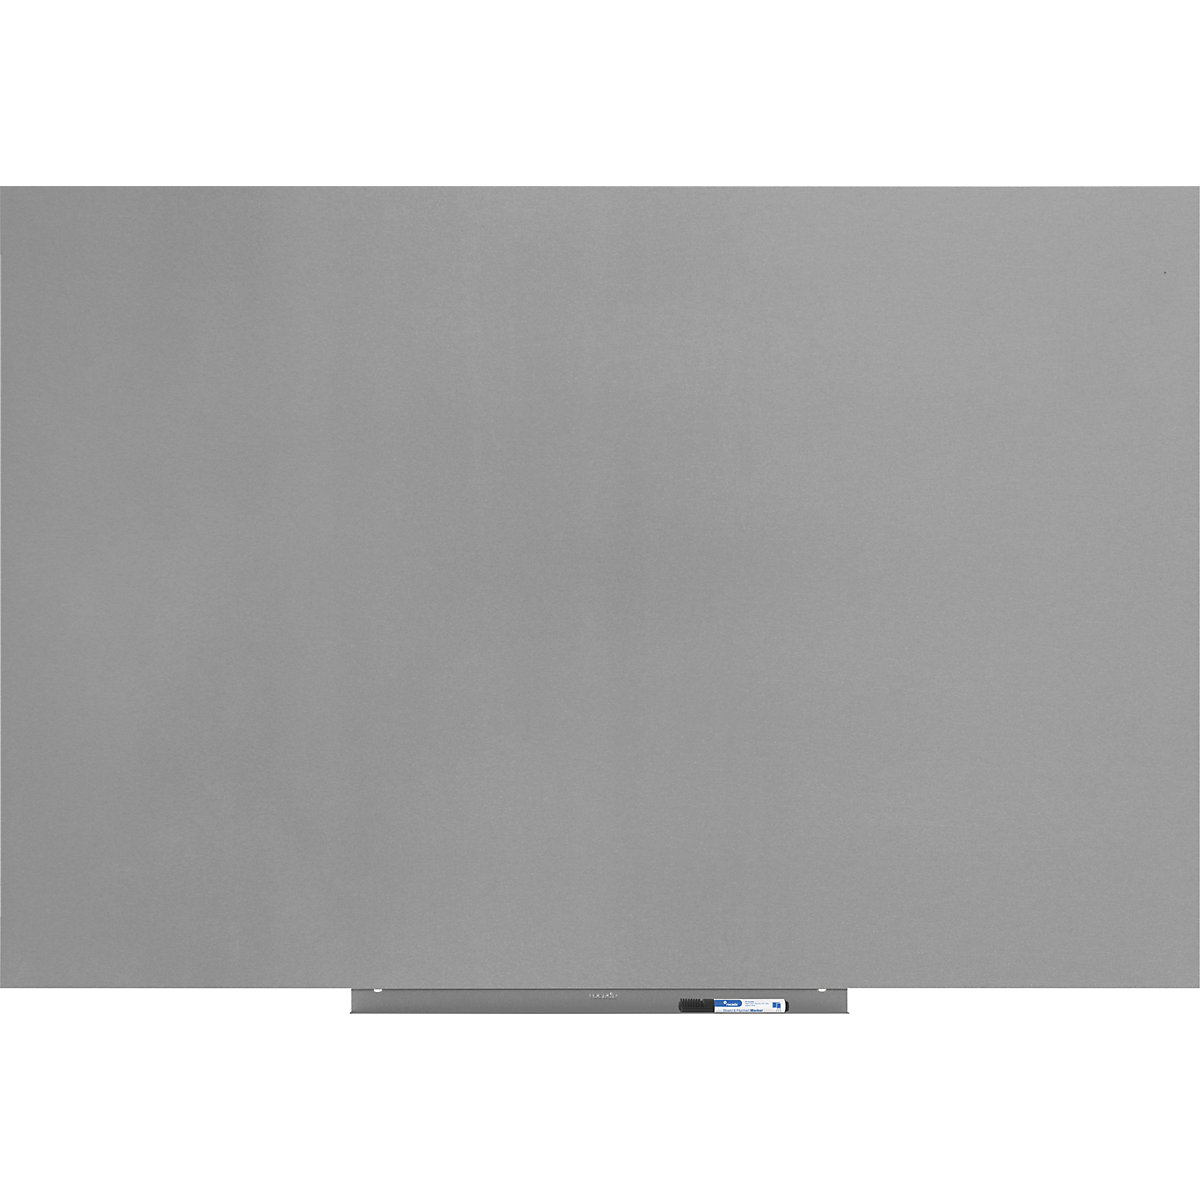 Modul za bele table, različica PRO – jeklena pločevina, z oblogo, ŠxV 1000 x 1500 mm, srebrne barve-16